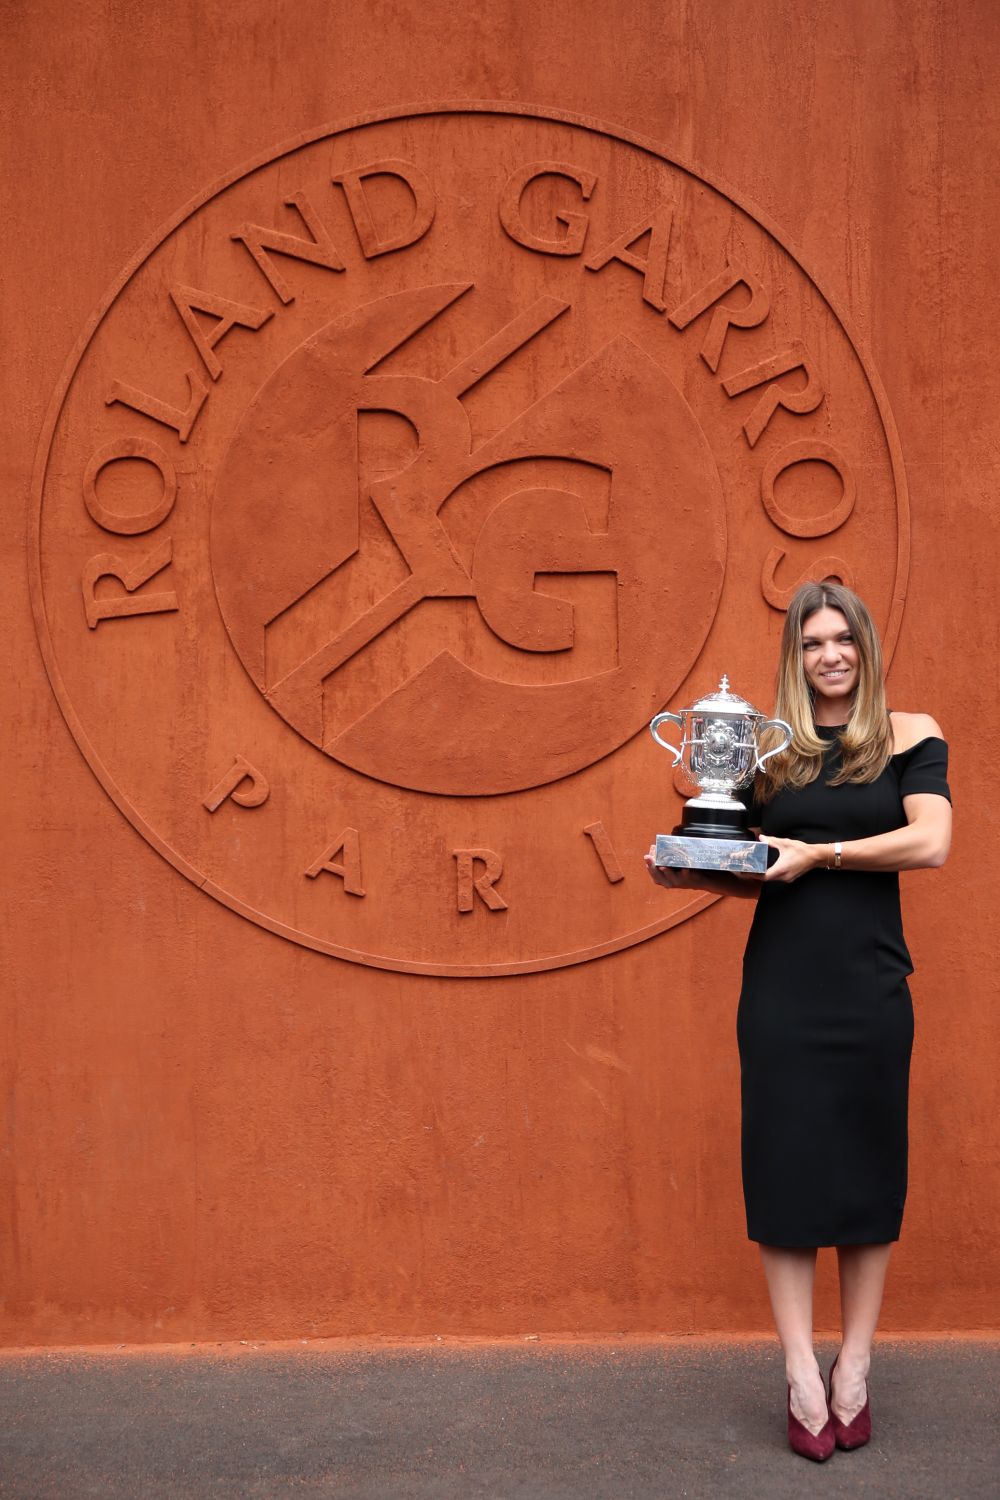 A avut loc sedinta foto a Simonei Halep cu trofeul Roland Garros! Cum s-a imbracat Simona la eveniment FOTO_16